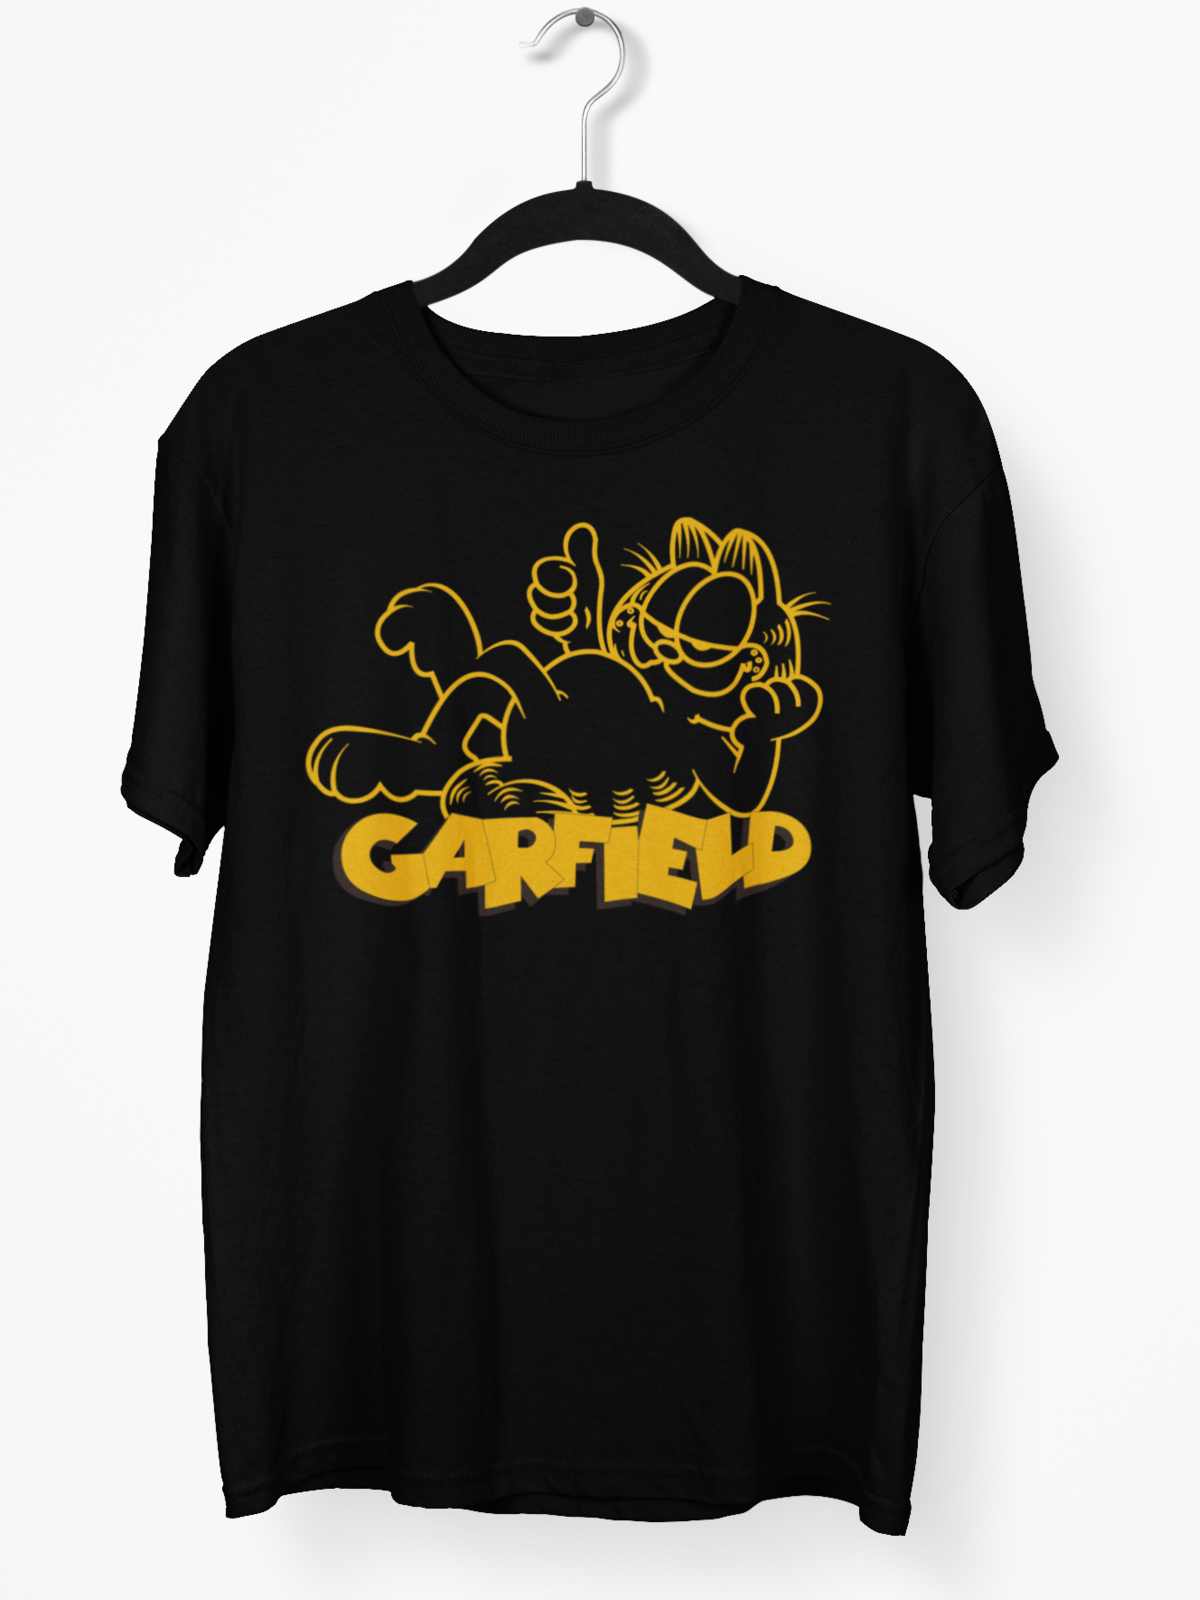 Classic: Garfield